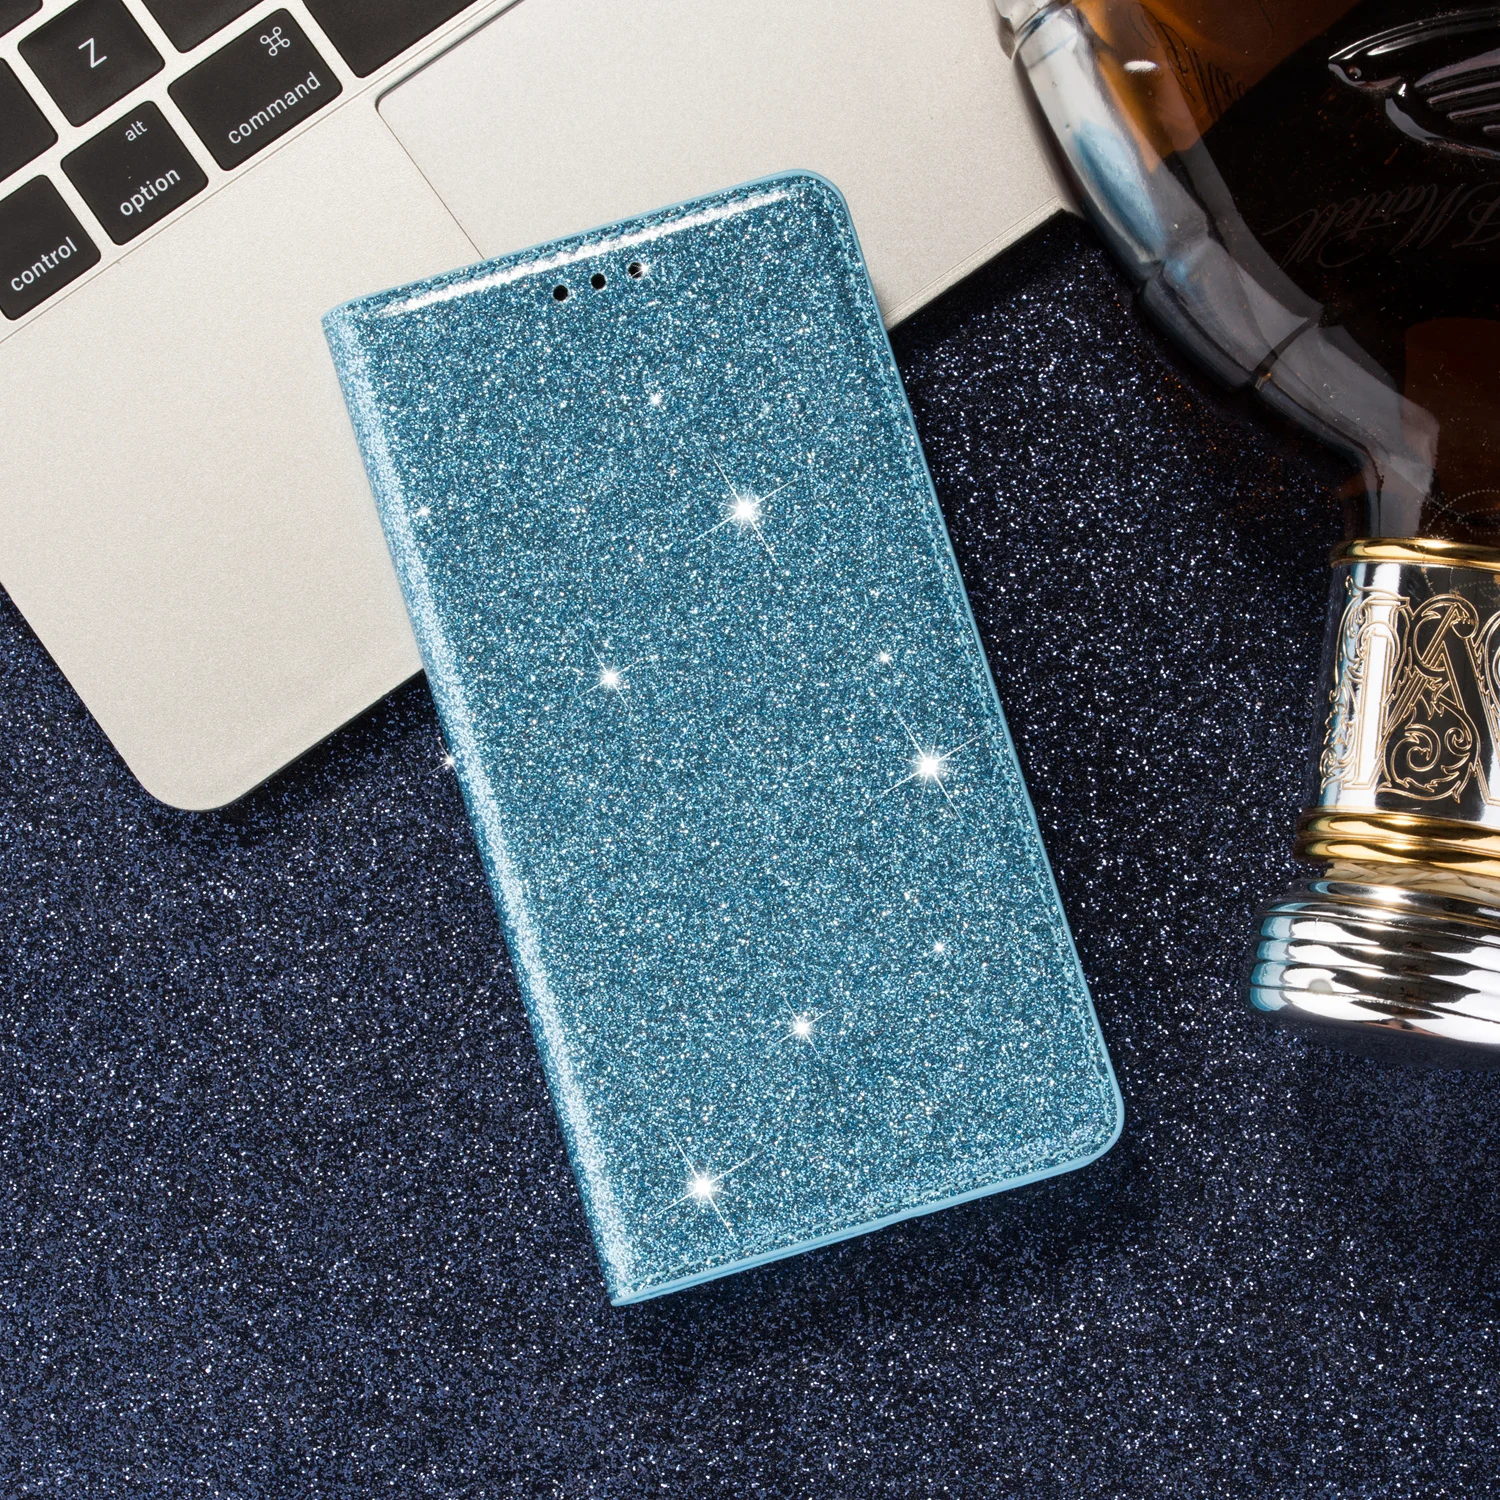 Блестящий чехол для samsung Galaxy J4 J4 Plus J6 Plus J330 J5 Pro J730 J8 блестящий кожаный флип-бумажник с подставкой для карт - Цвет: Blue